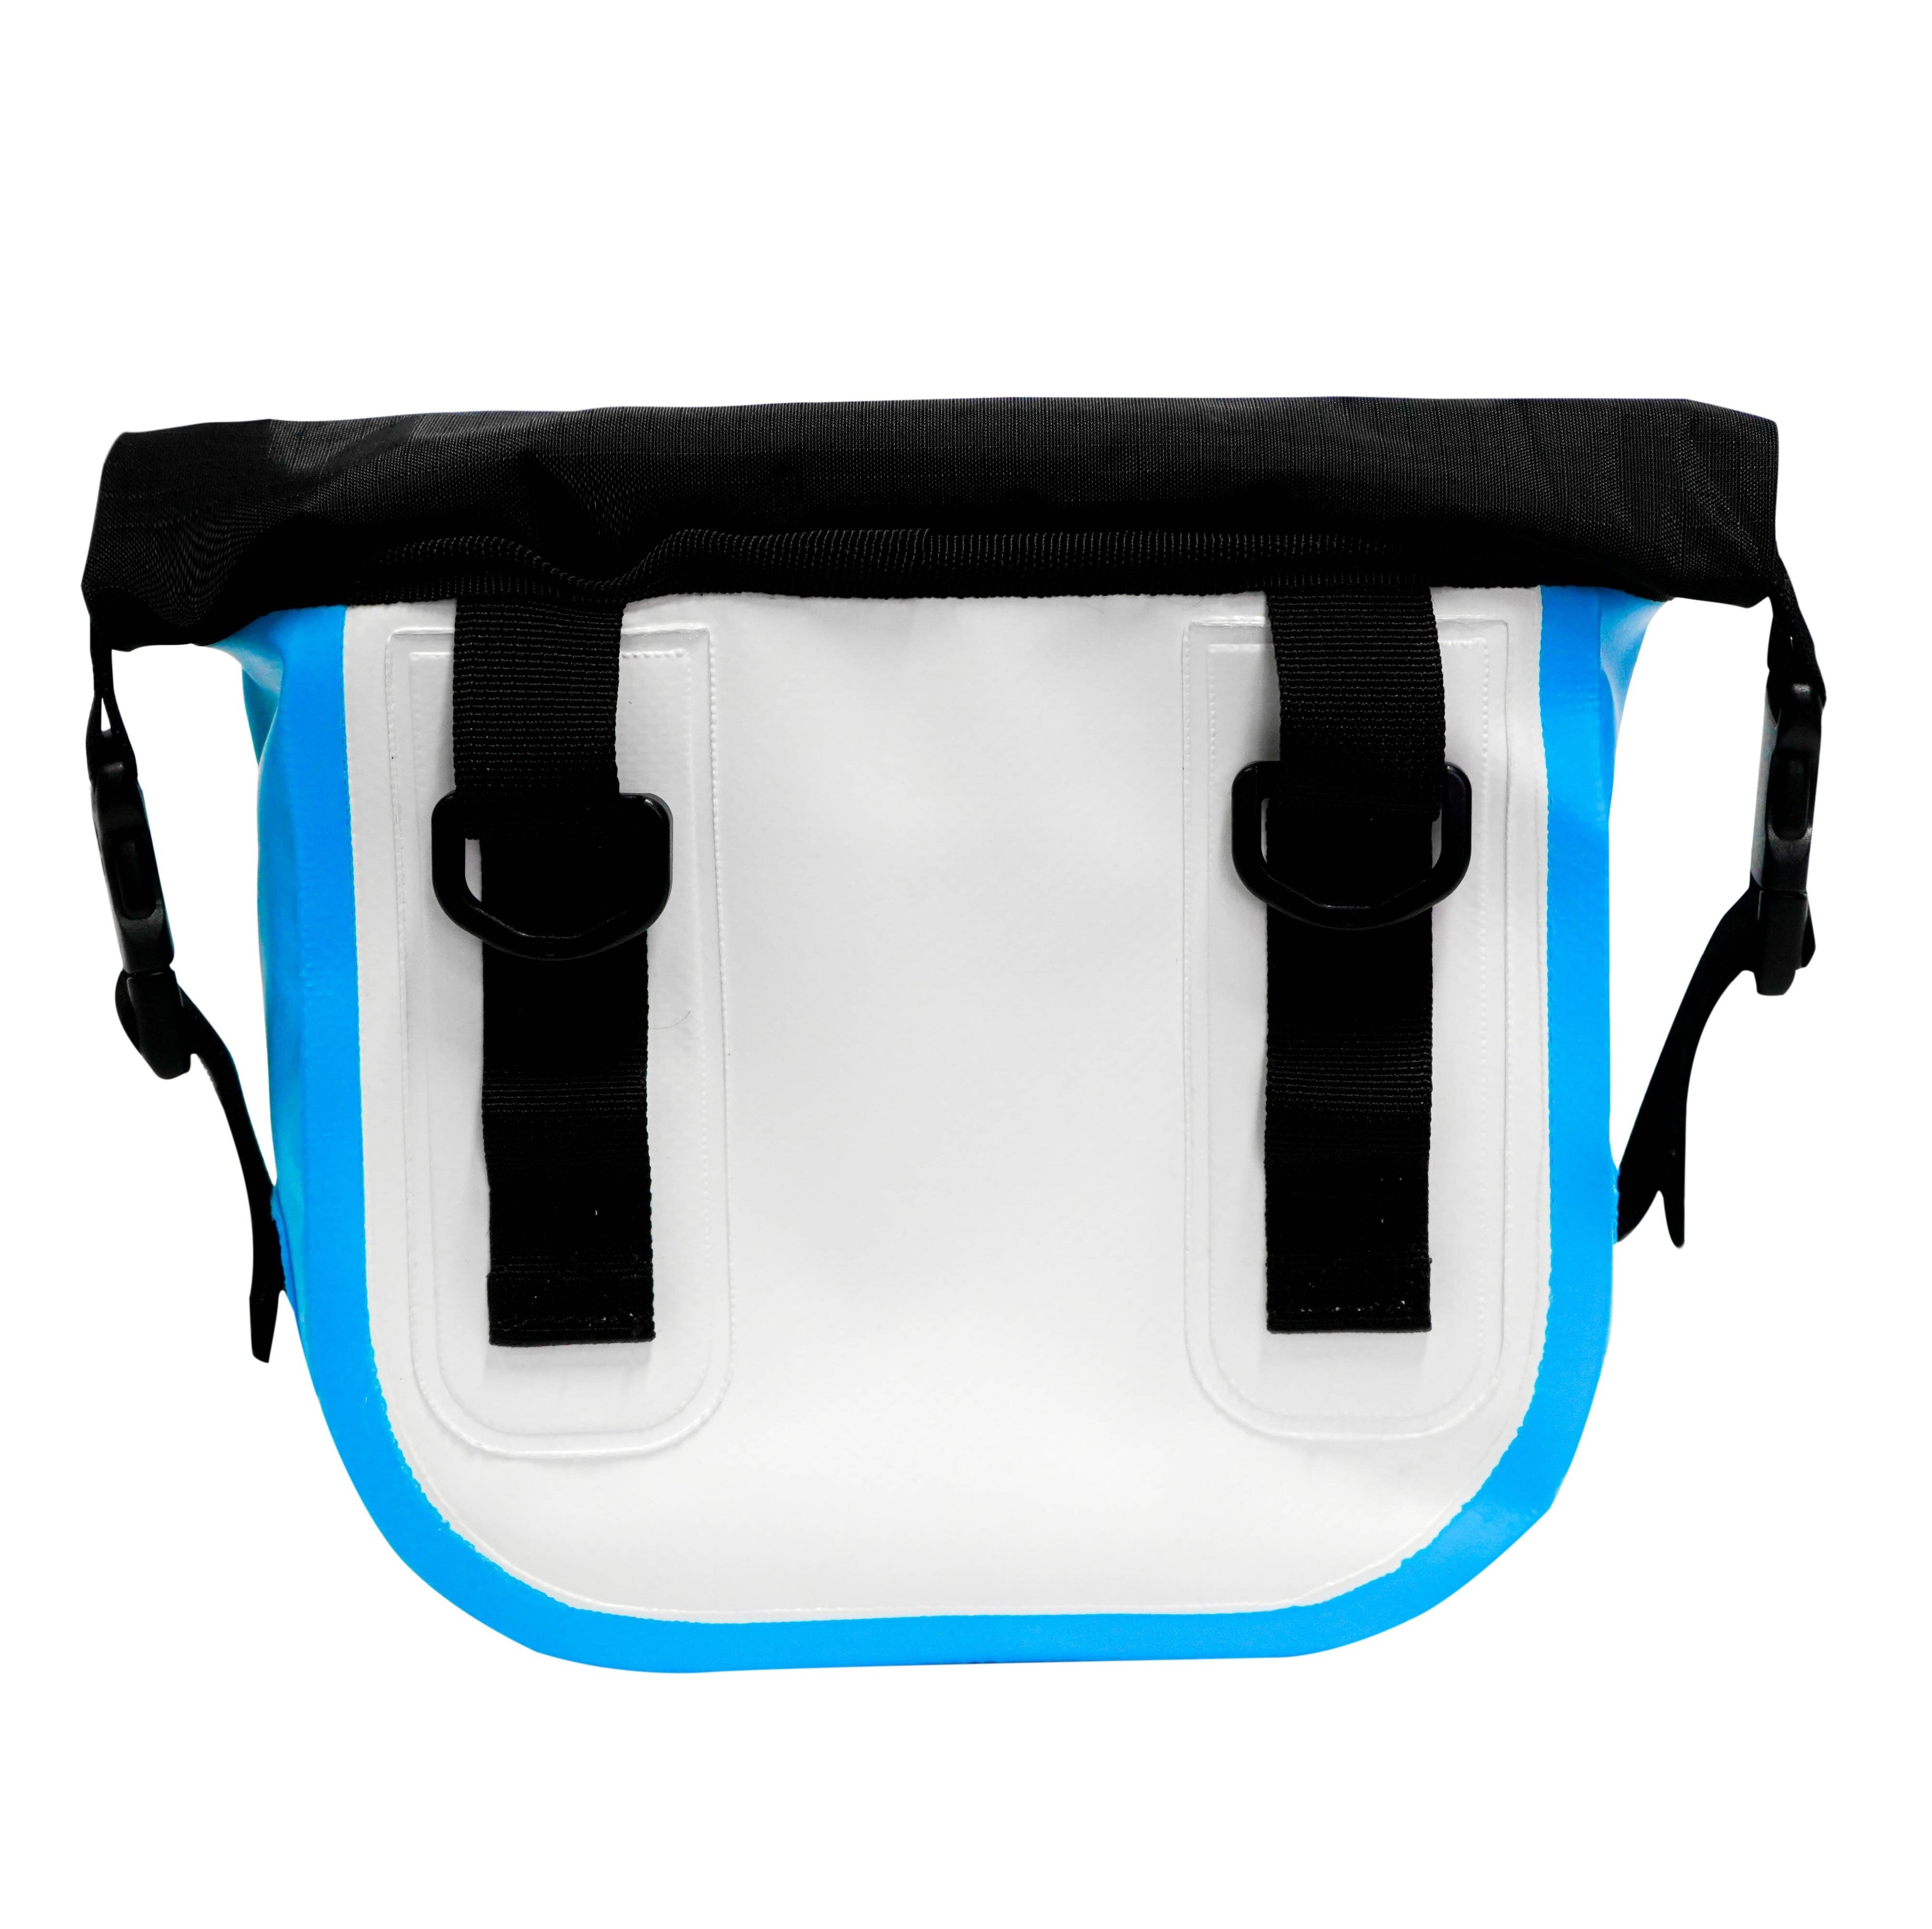 Jazz waterproof bag